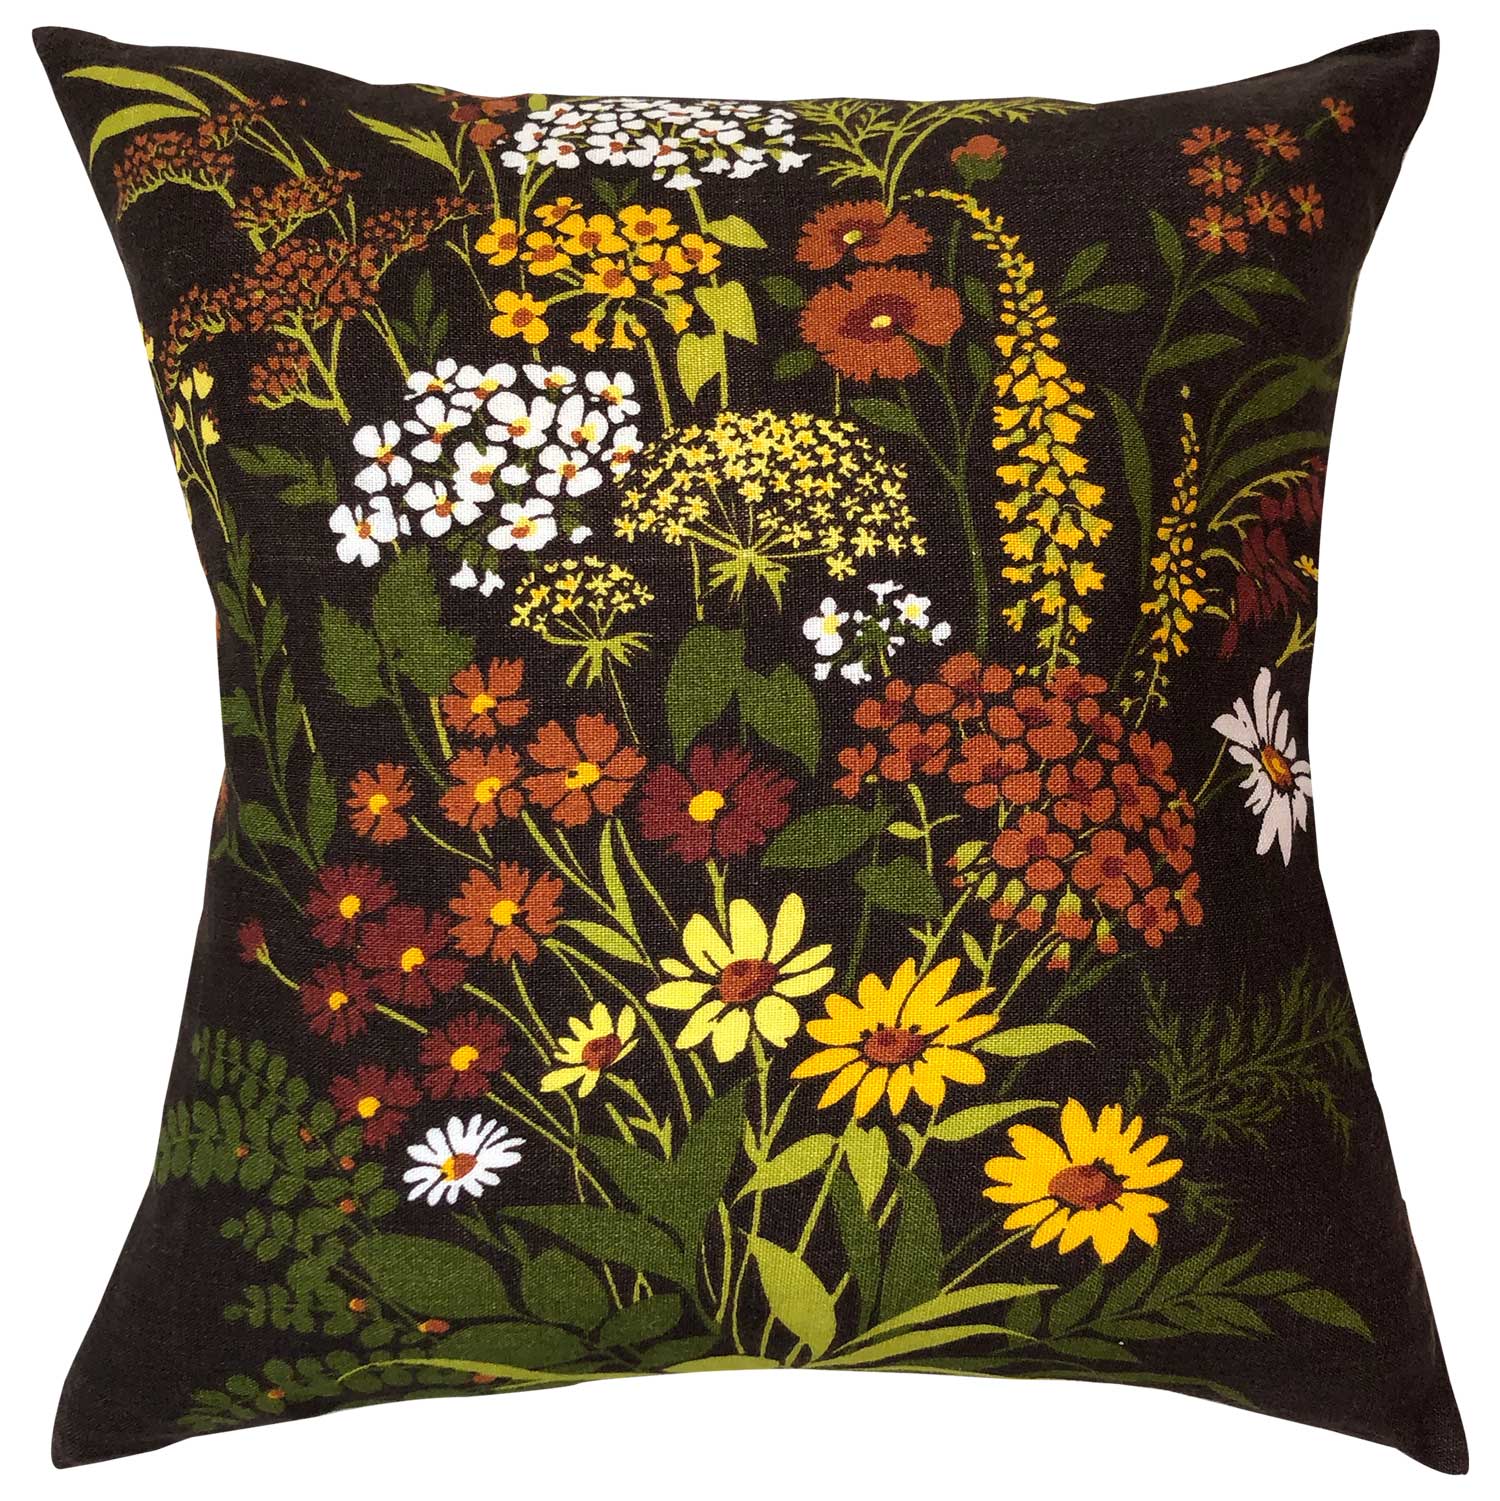 Autumn toned floral vintage linen teatowel cushion cover